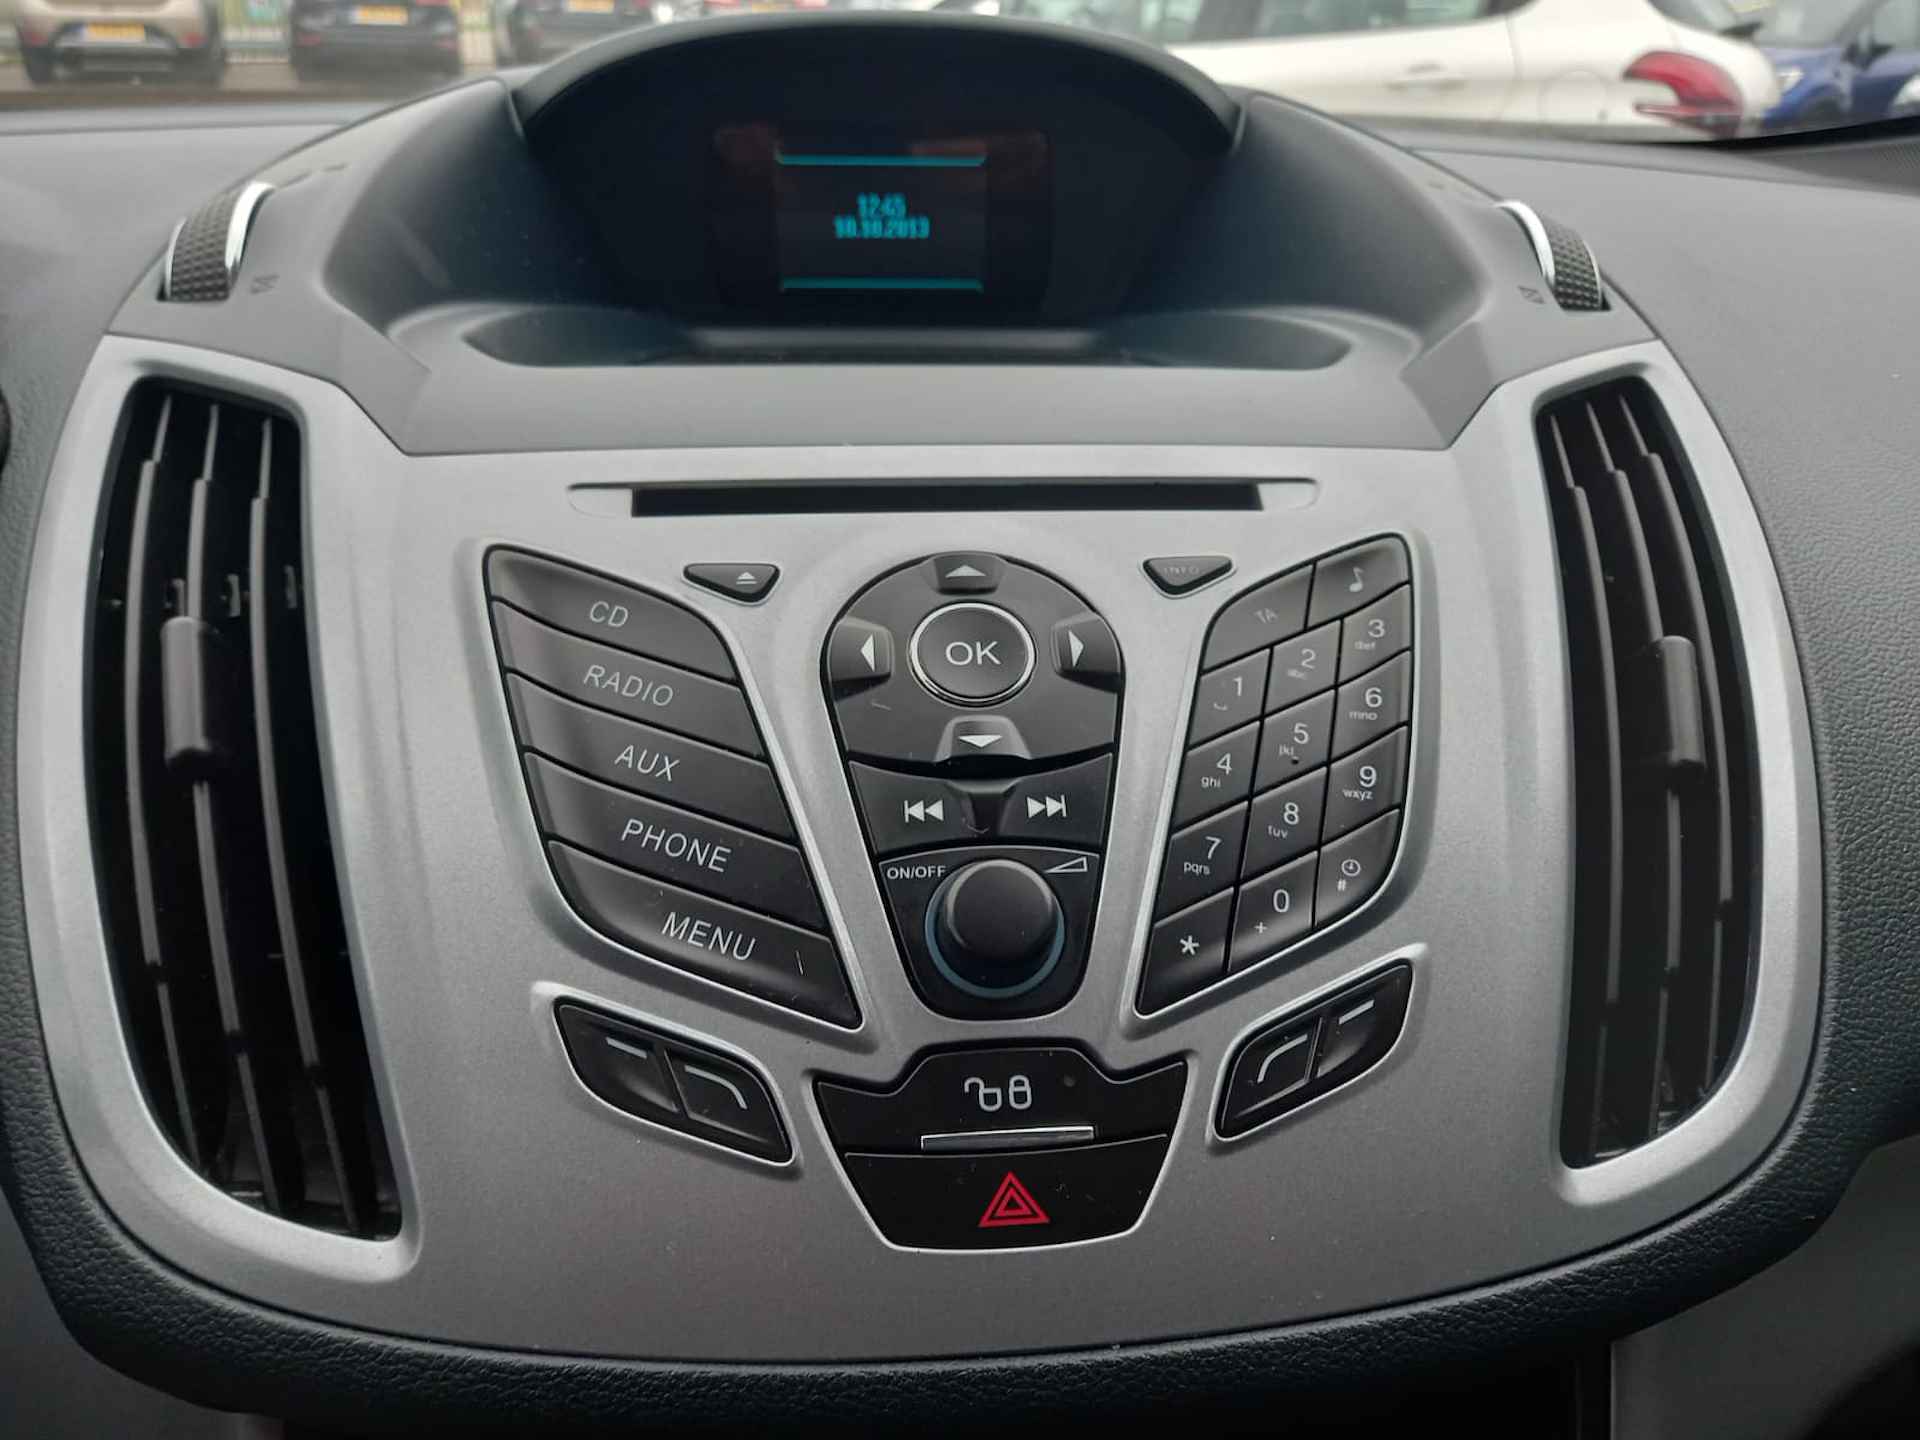 Ford Grand C-Max 1.0 7 Pers. Airco, Multimedia voorbereiding, Bluetooth telefoonvoorbereiding, Stoelverwarming, Voorruit verwarmd, Parkeersensore , Elektrische ramen voor en achter, Licht metalen velgen, Centrale vergrendeling met afstandsbediening, Nette auto inclusief BOVAG garantie - 20/29